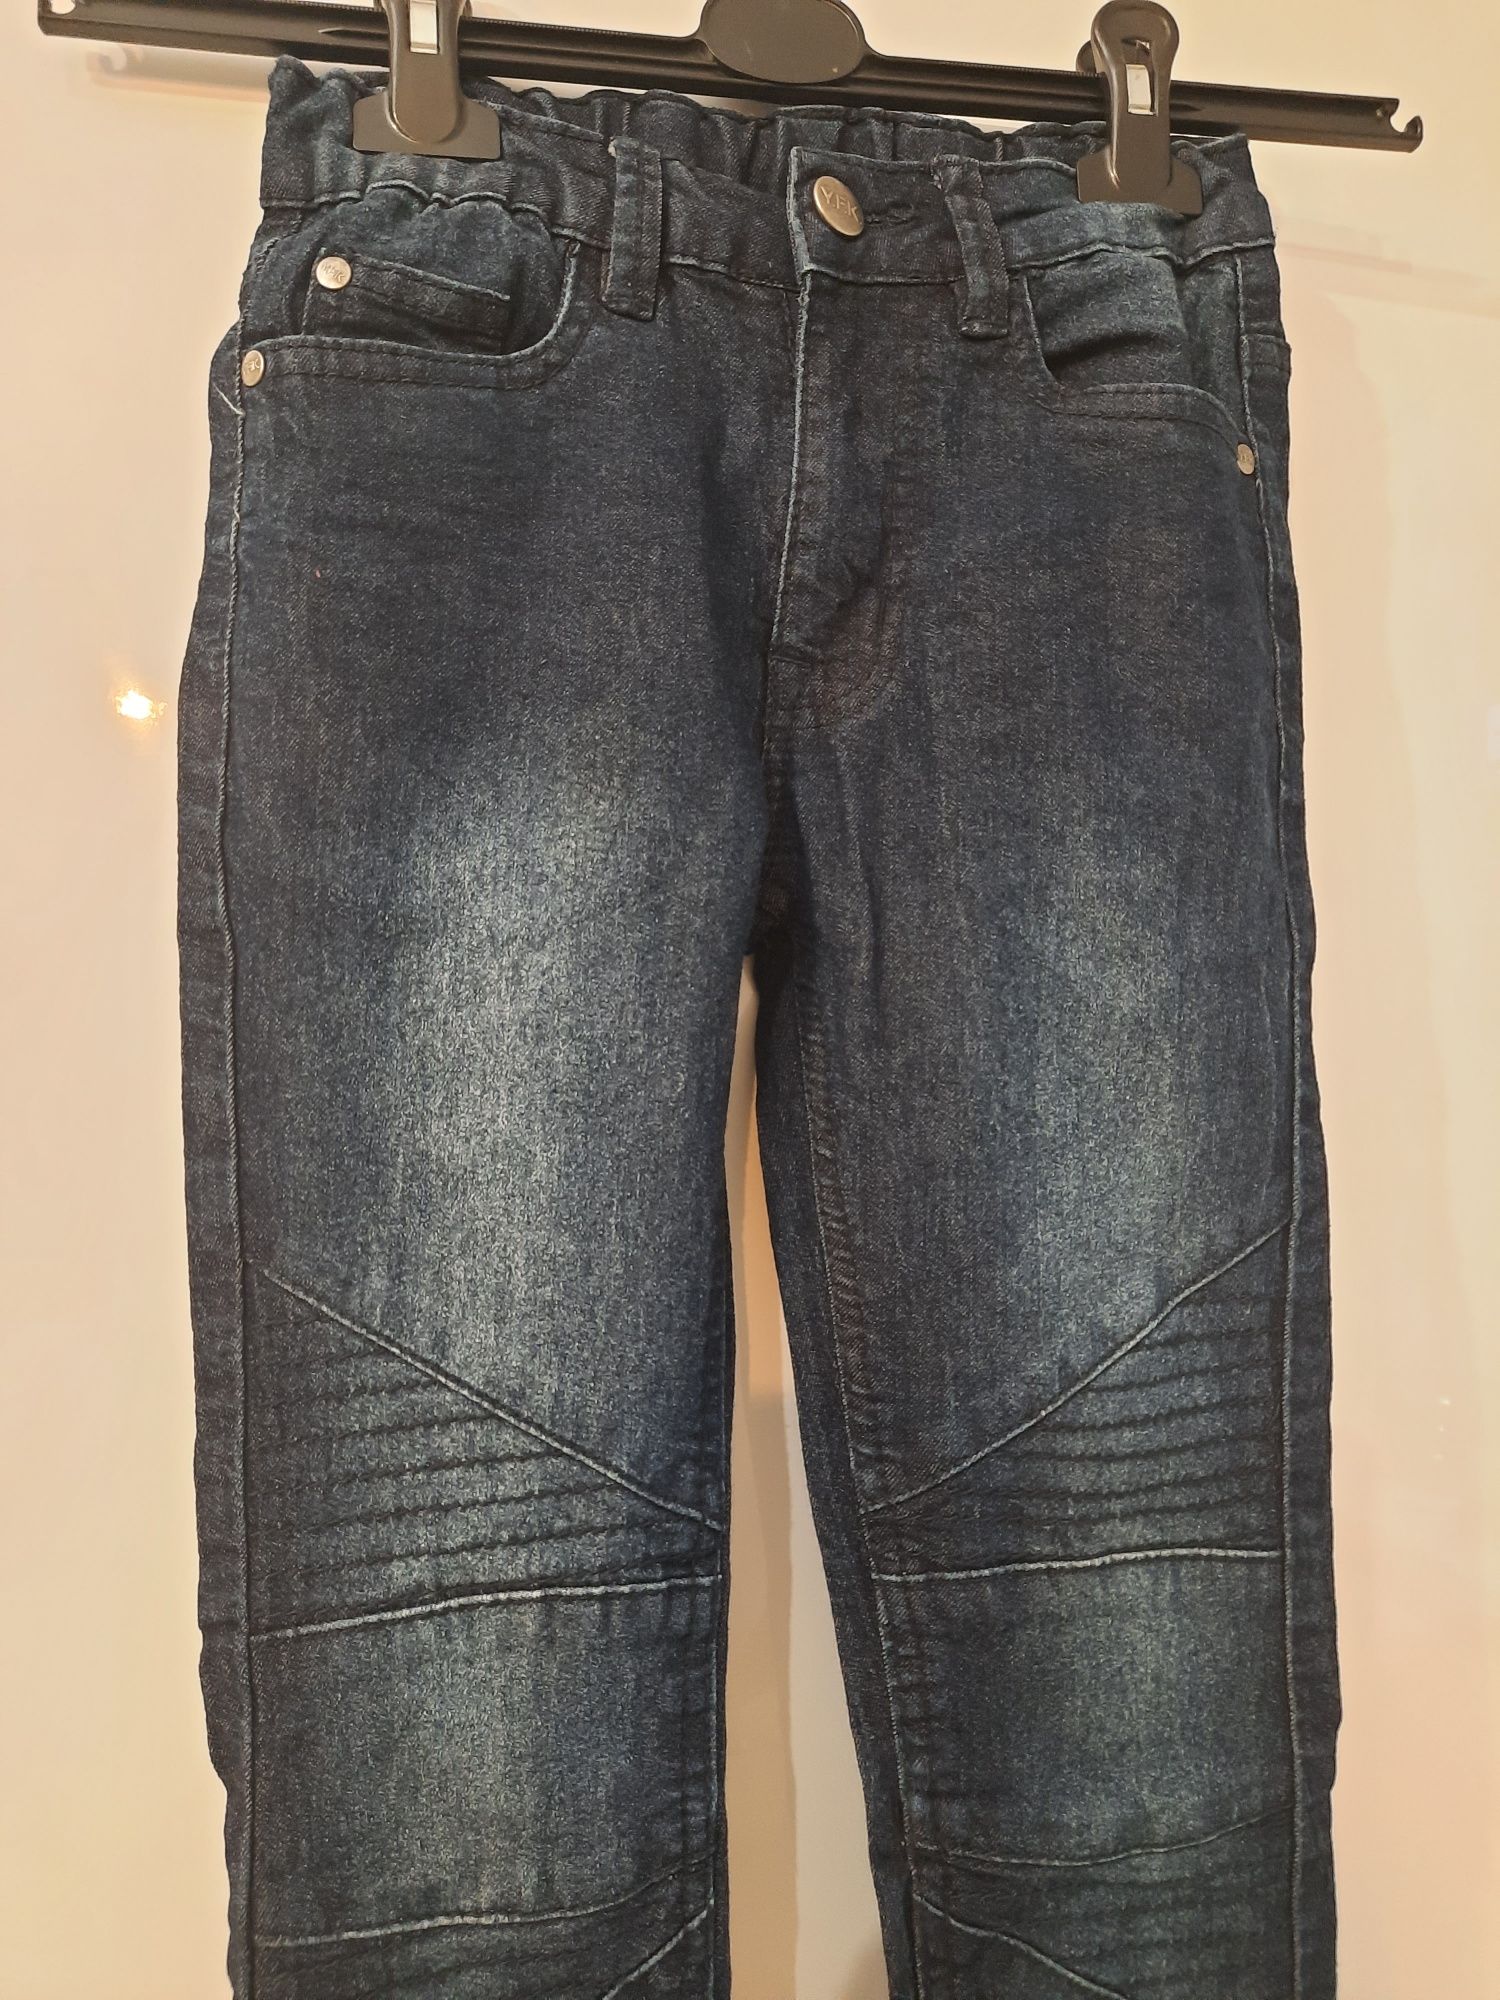 Dżinsowe spodnie dla chłopca na 8-9lat 134cm yfk